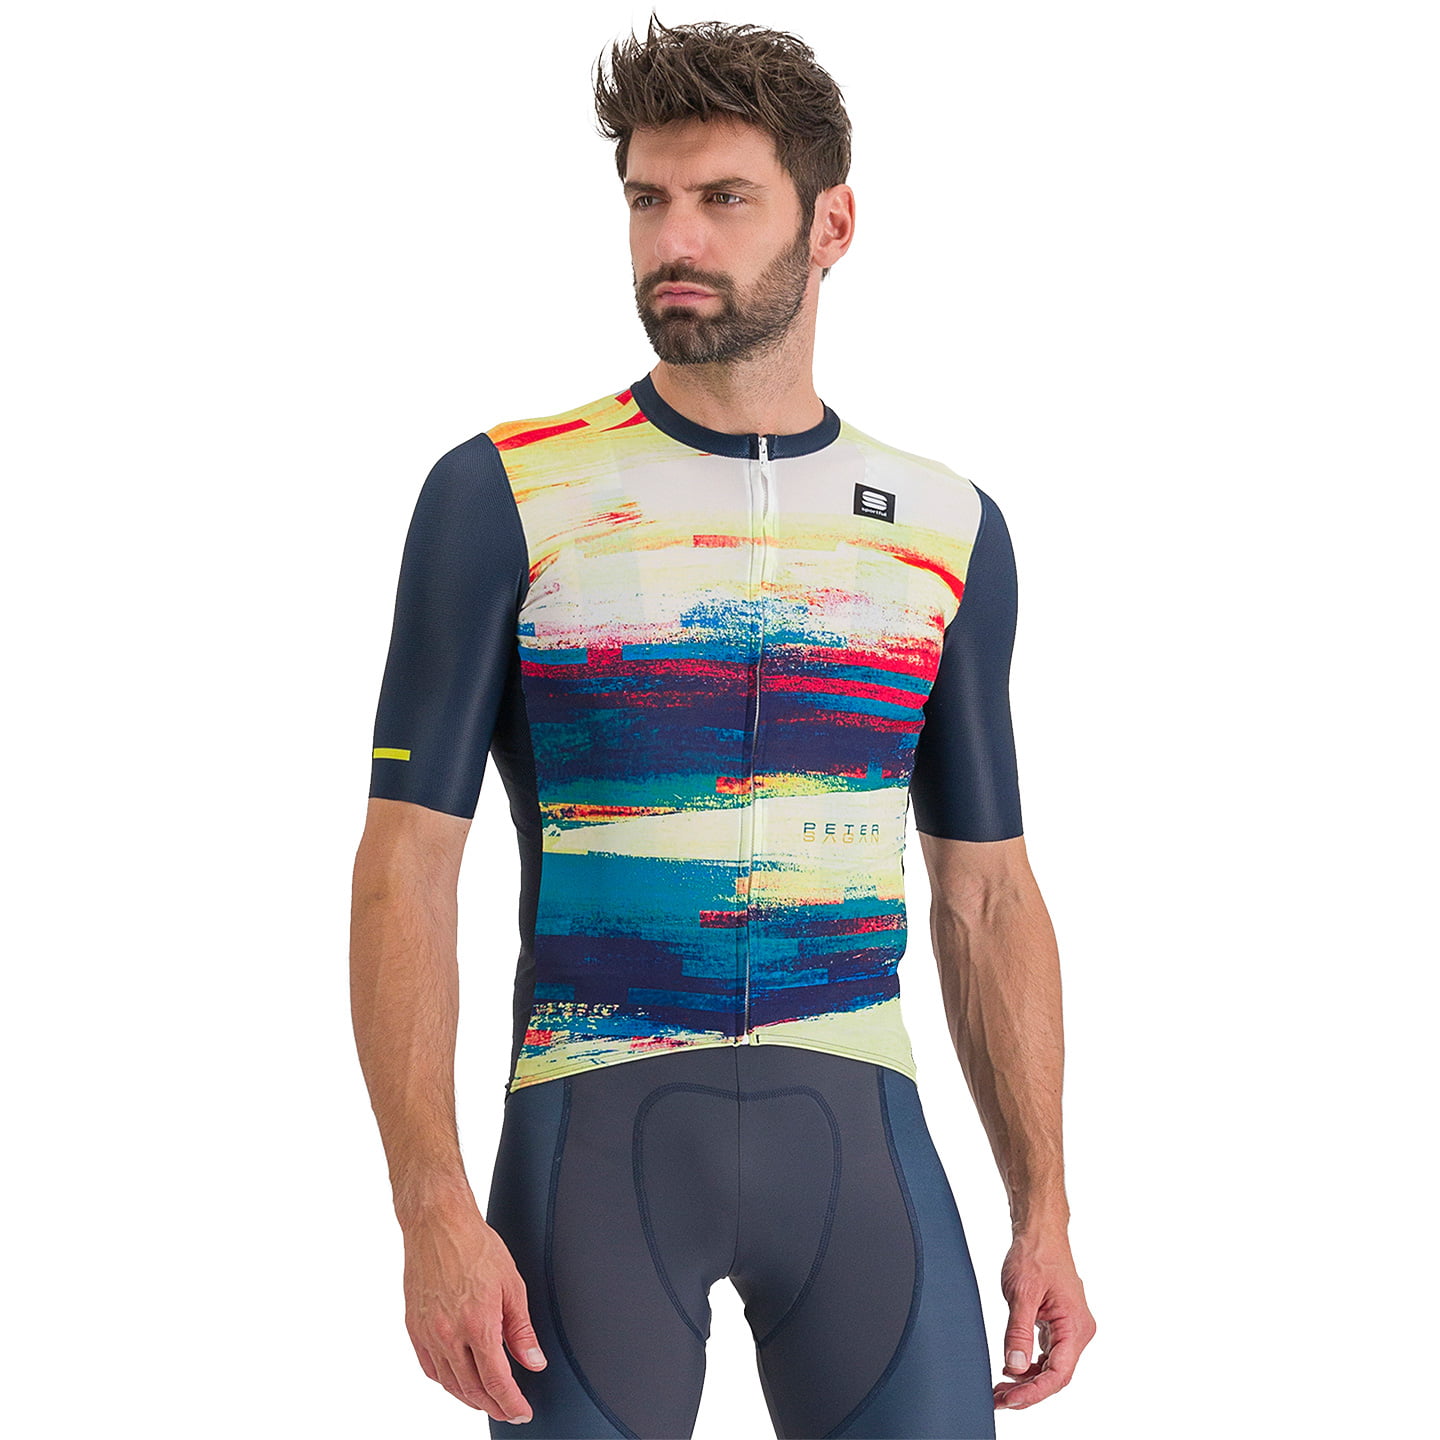 SPORTFUL Peter Sagan Line Short Sleeve Jersey Short Sleeve Jersey, for men, size XL, Bike Jersey, Cycle gear